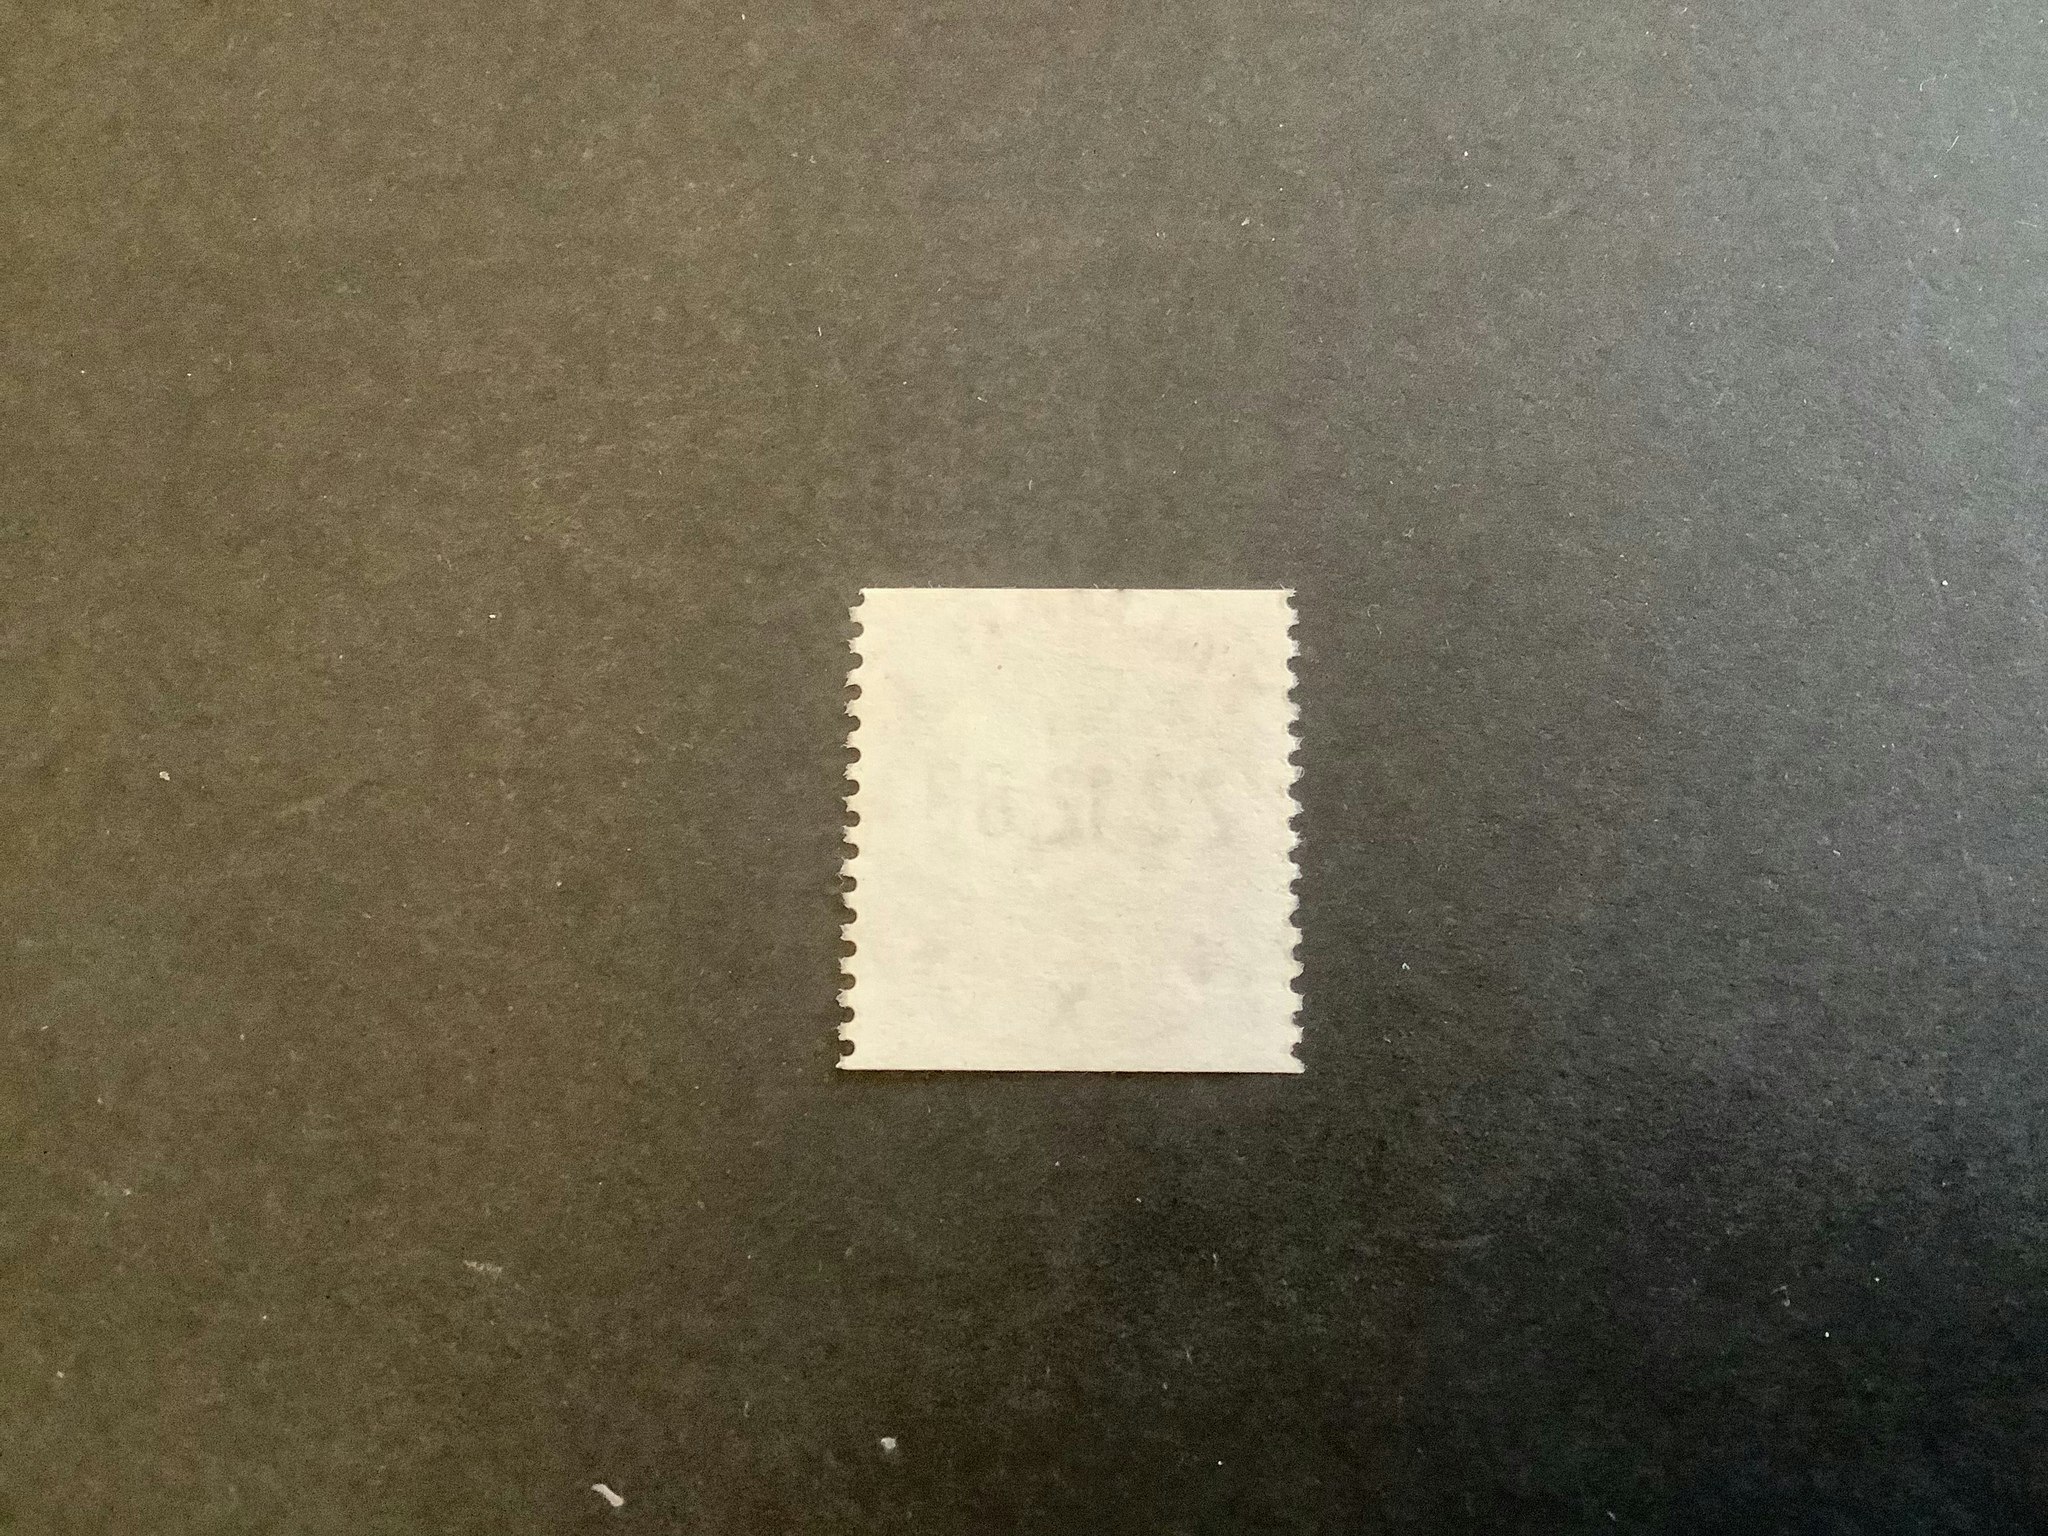 Postens emblem facit nr 1435 lyxstämplat KALMAR 1